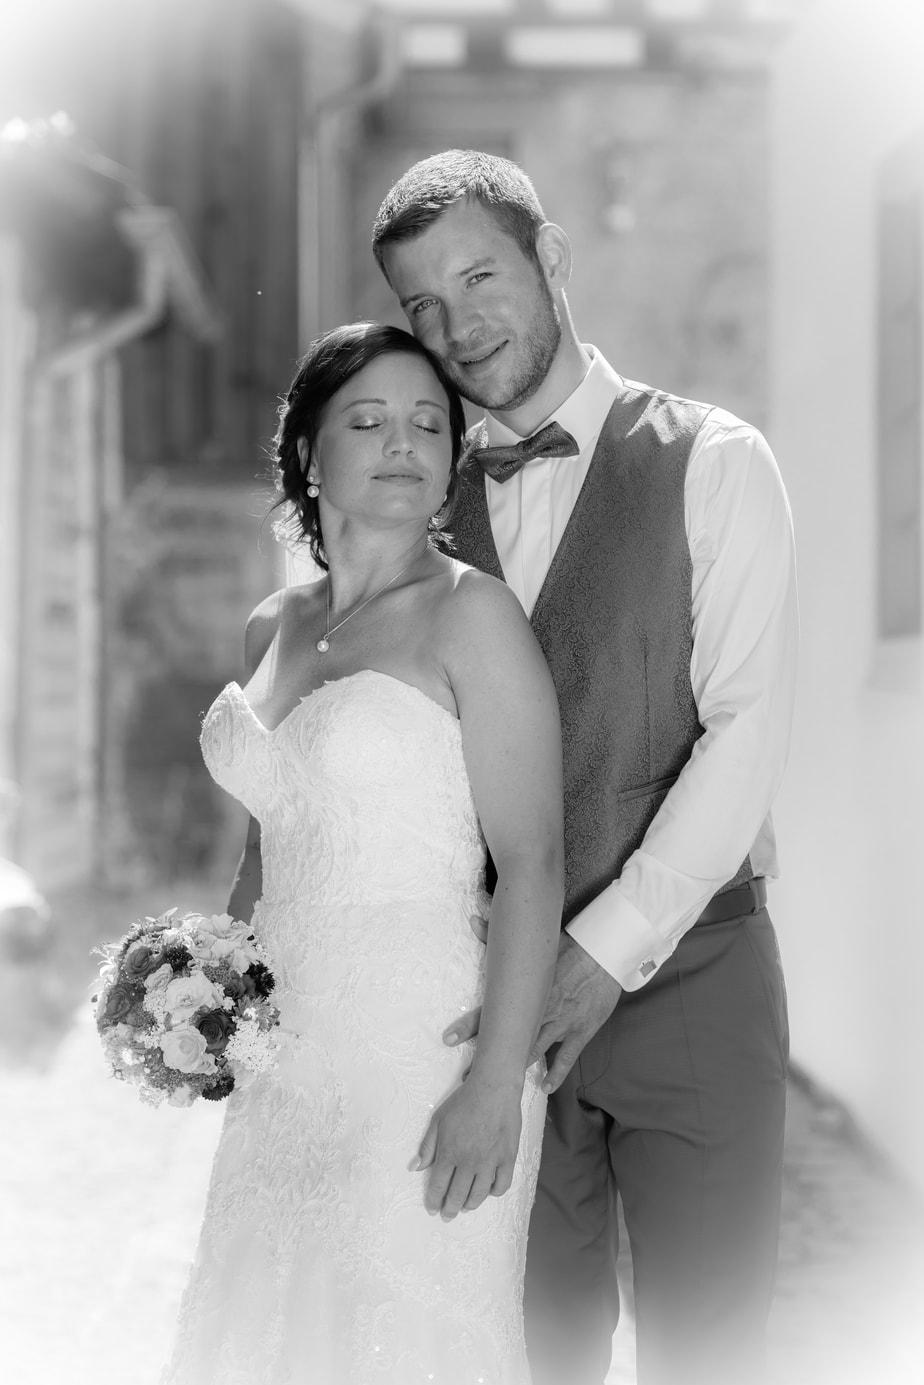 Romantisches Hochzeitsfoto in schwarz weiß